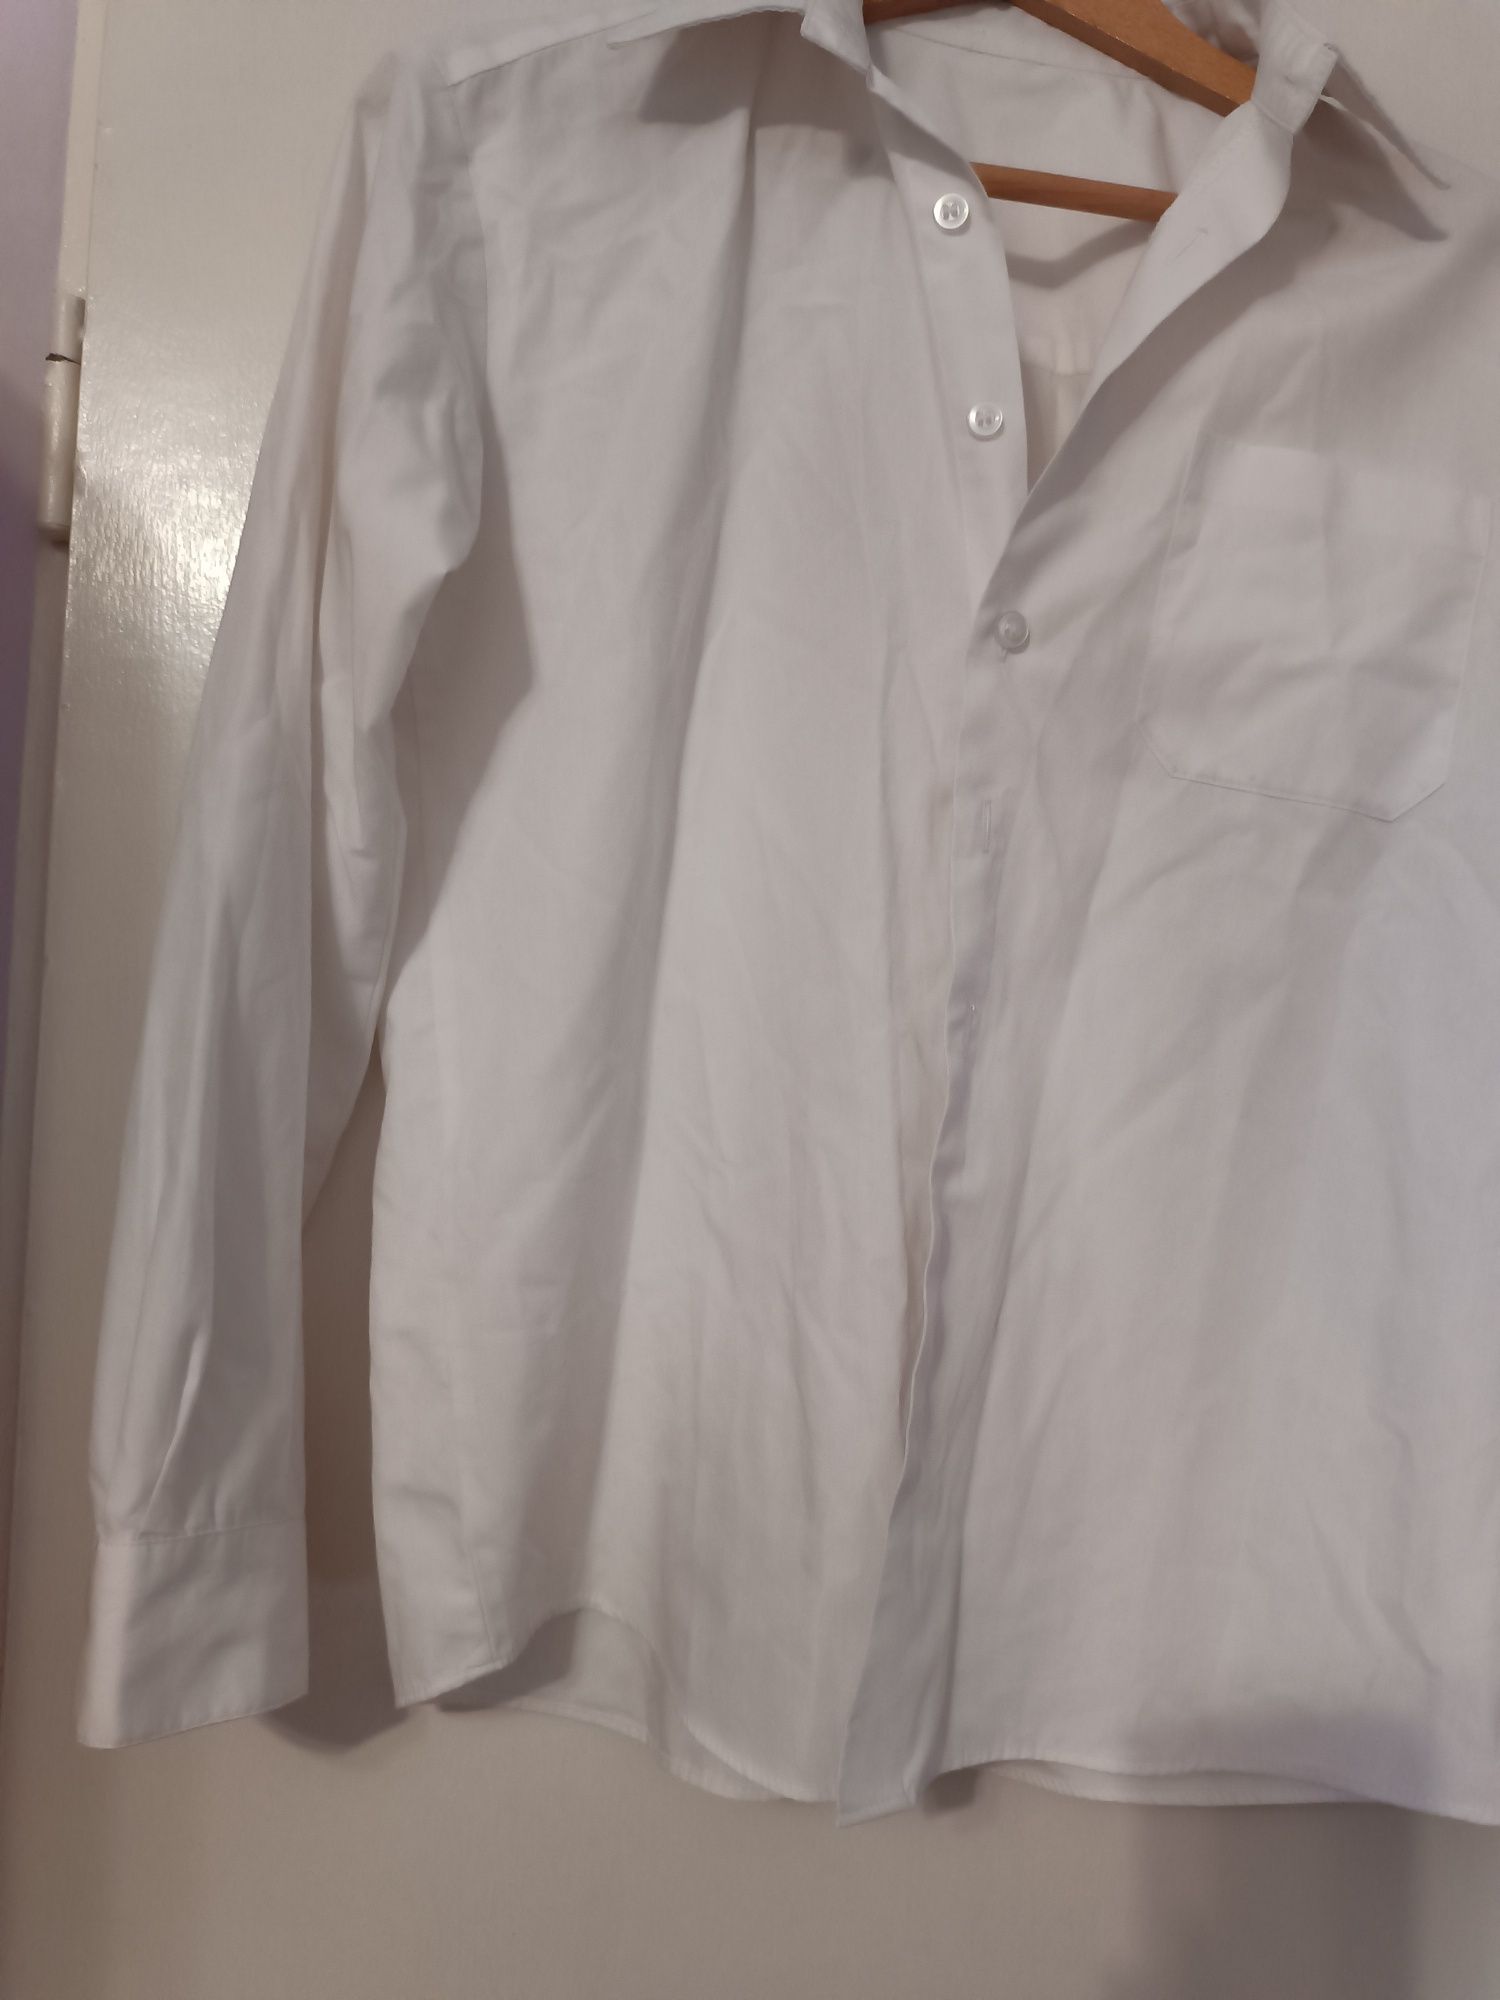 Koszula biała chłopięca długi rękaw 158